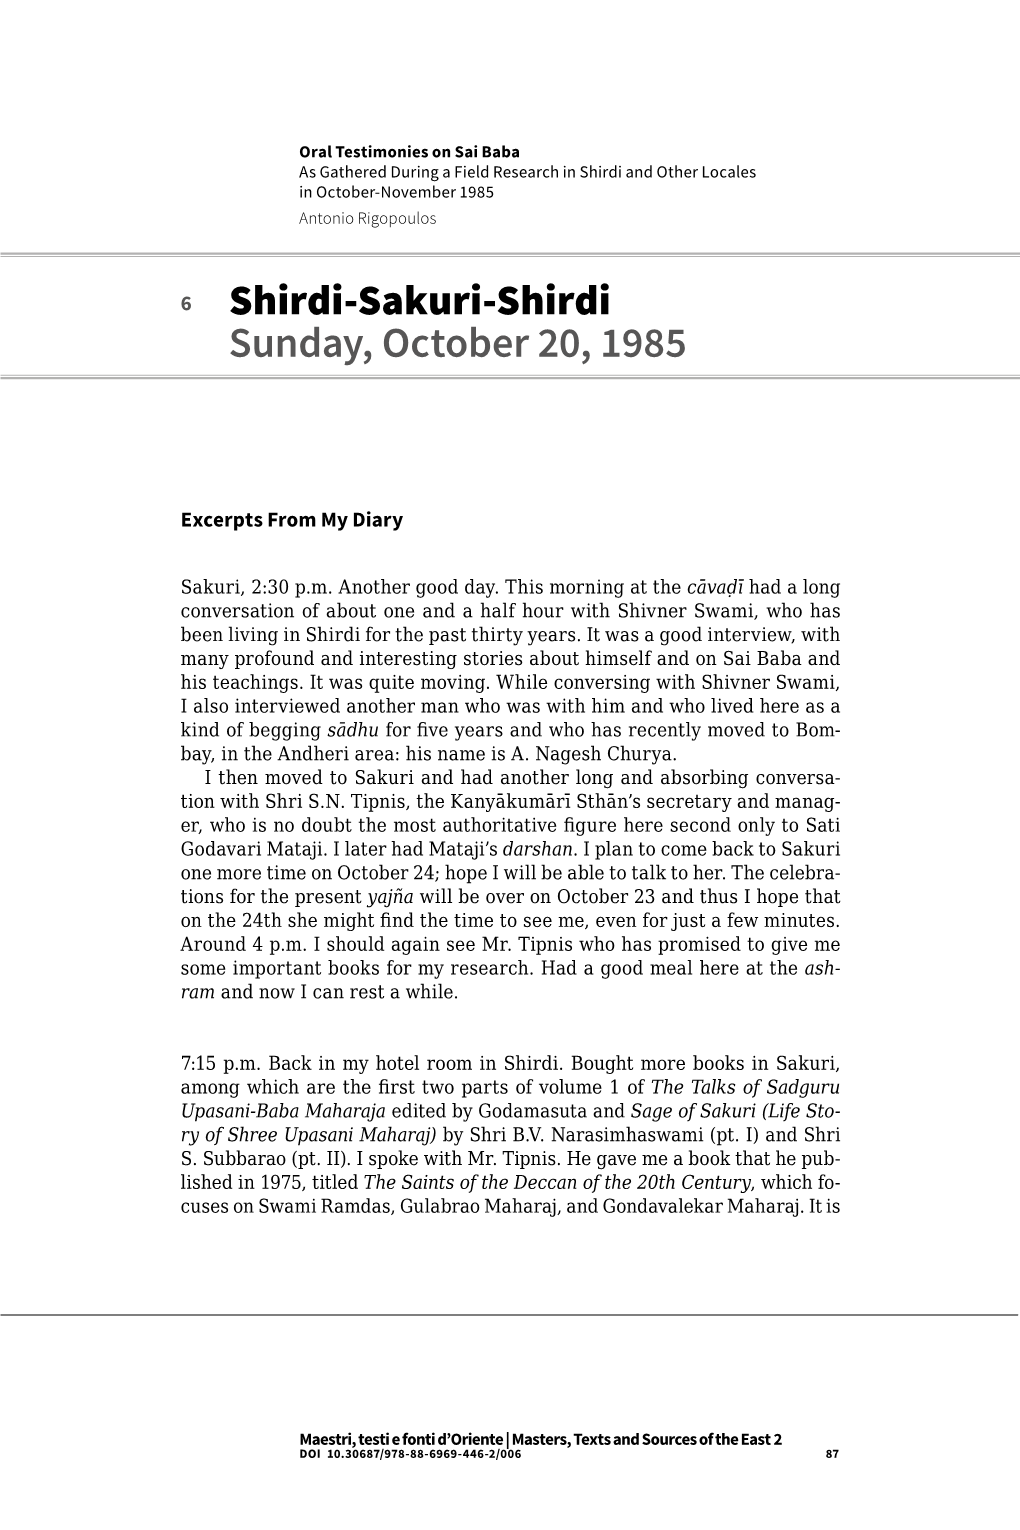 Shirdi-Sakuri-Shirdi Sunday, October 20, 1985